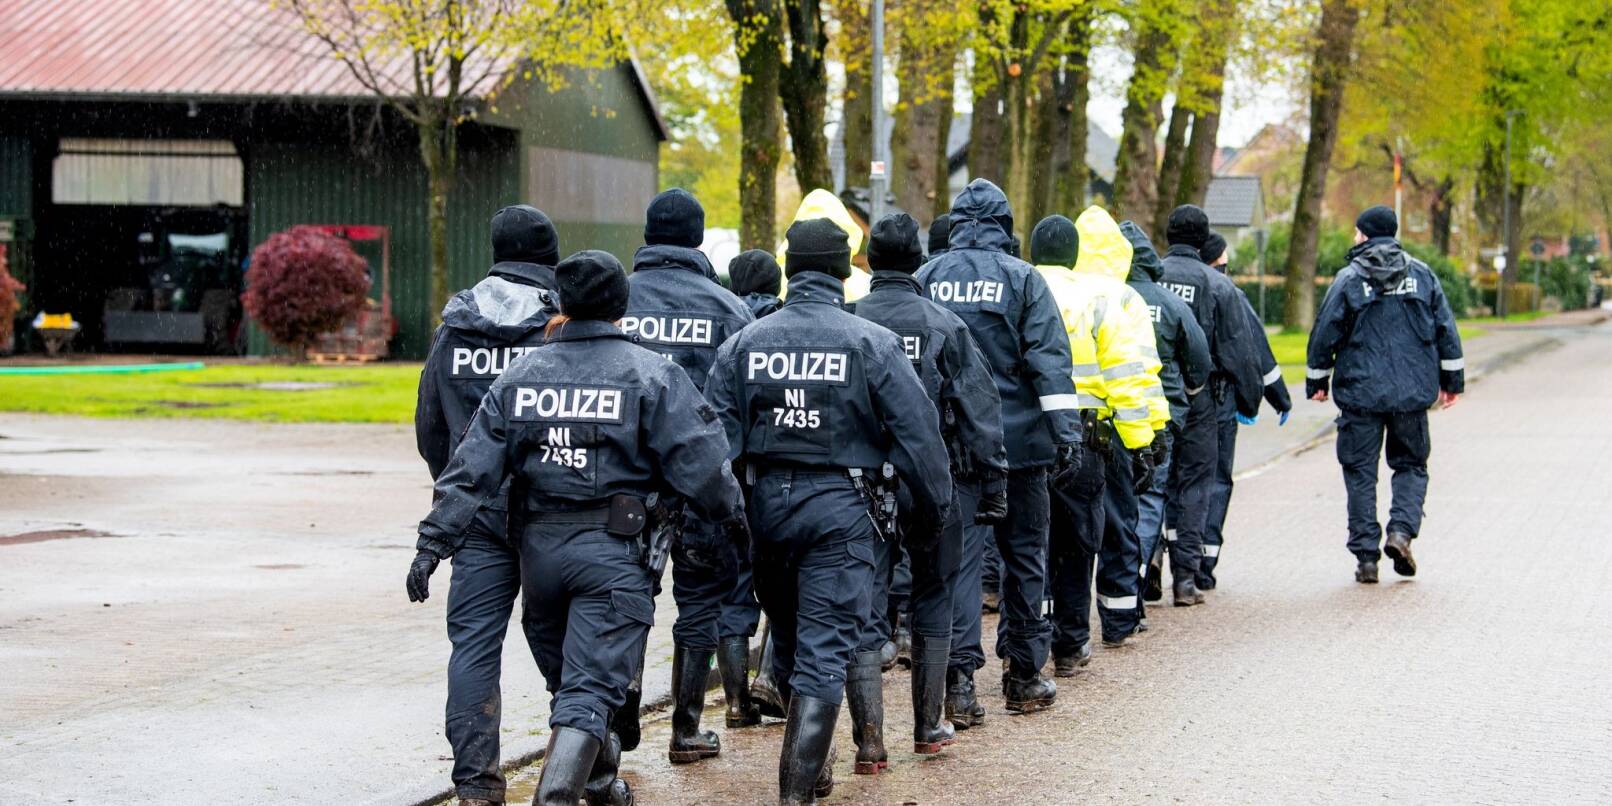 Polizisten gehen auf der Suche nach einem vermissten Jungen durch eine Ortschaft in Niedersachsen.